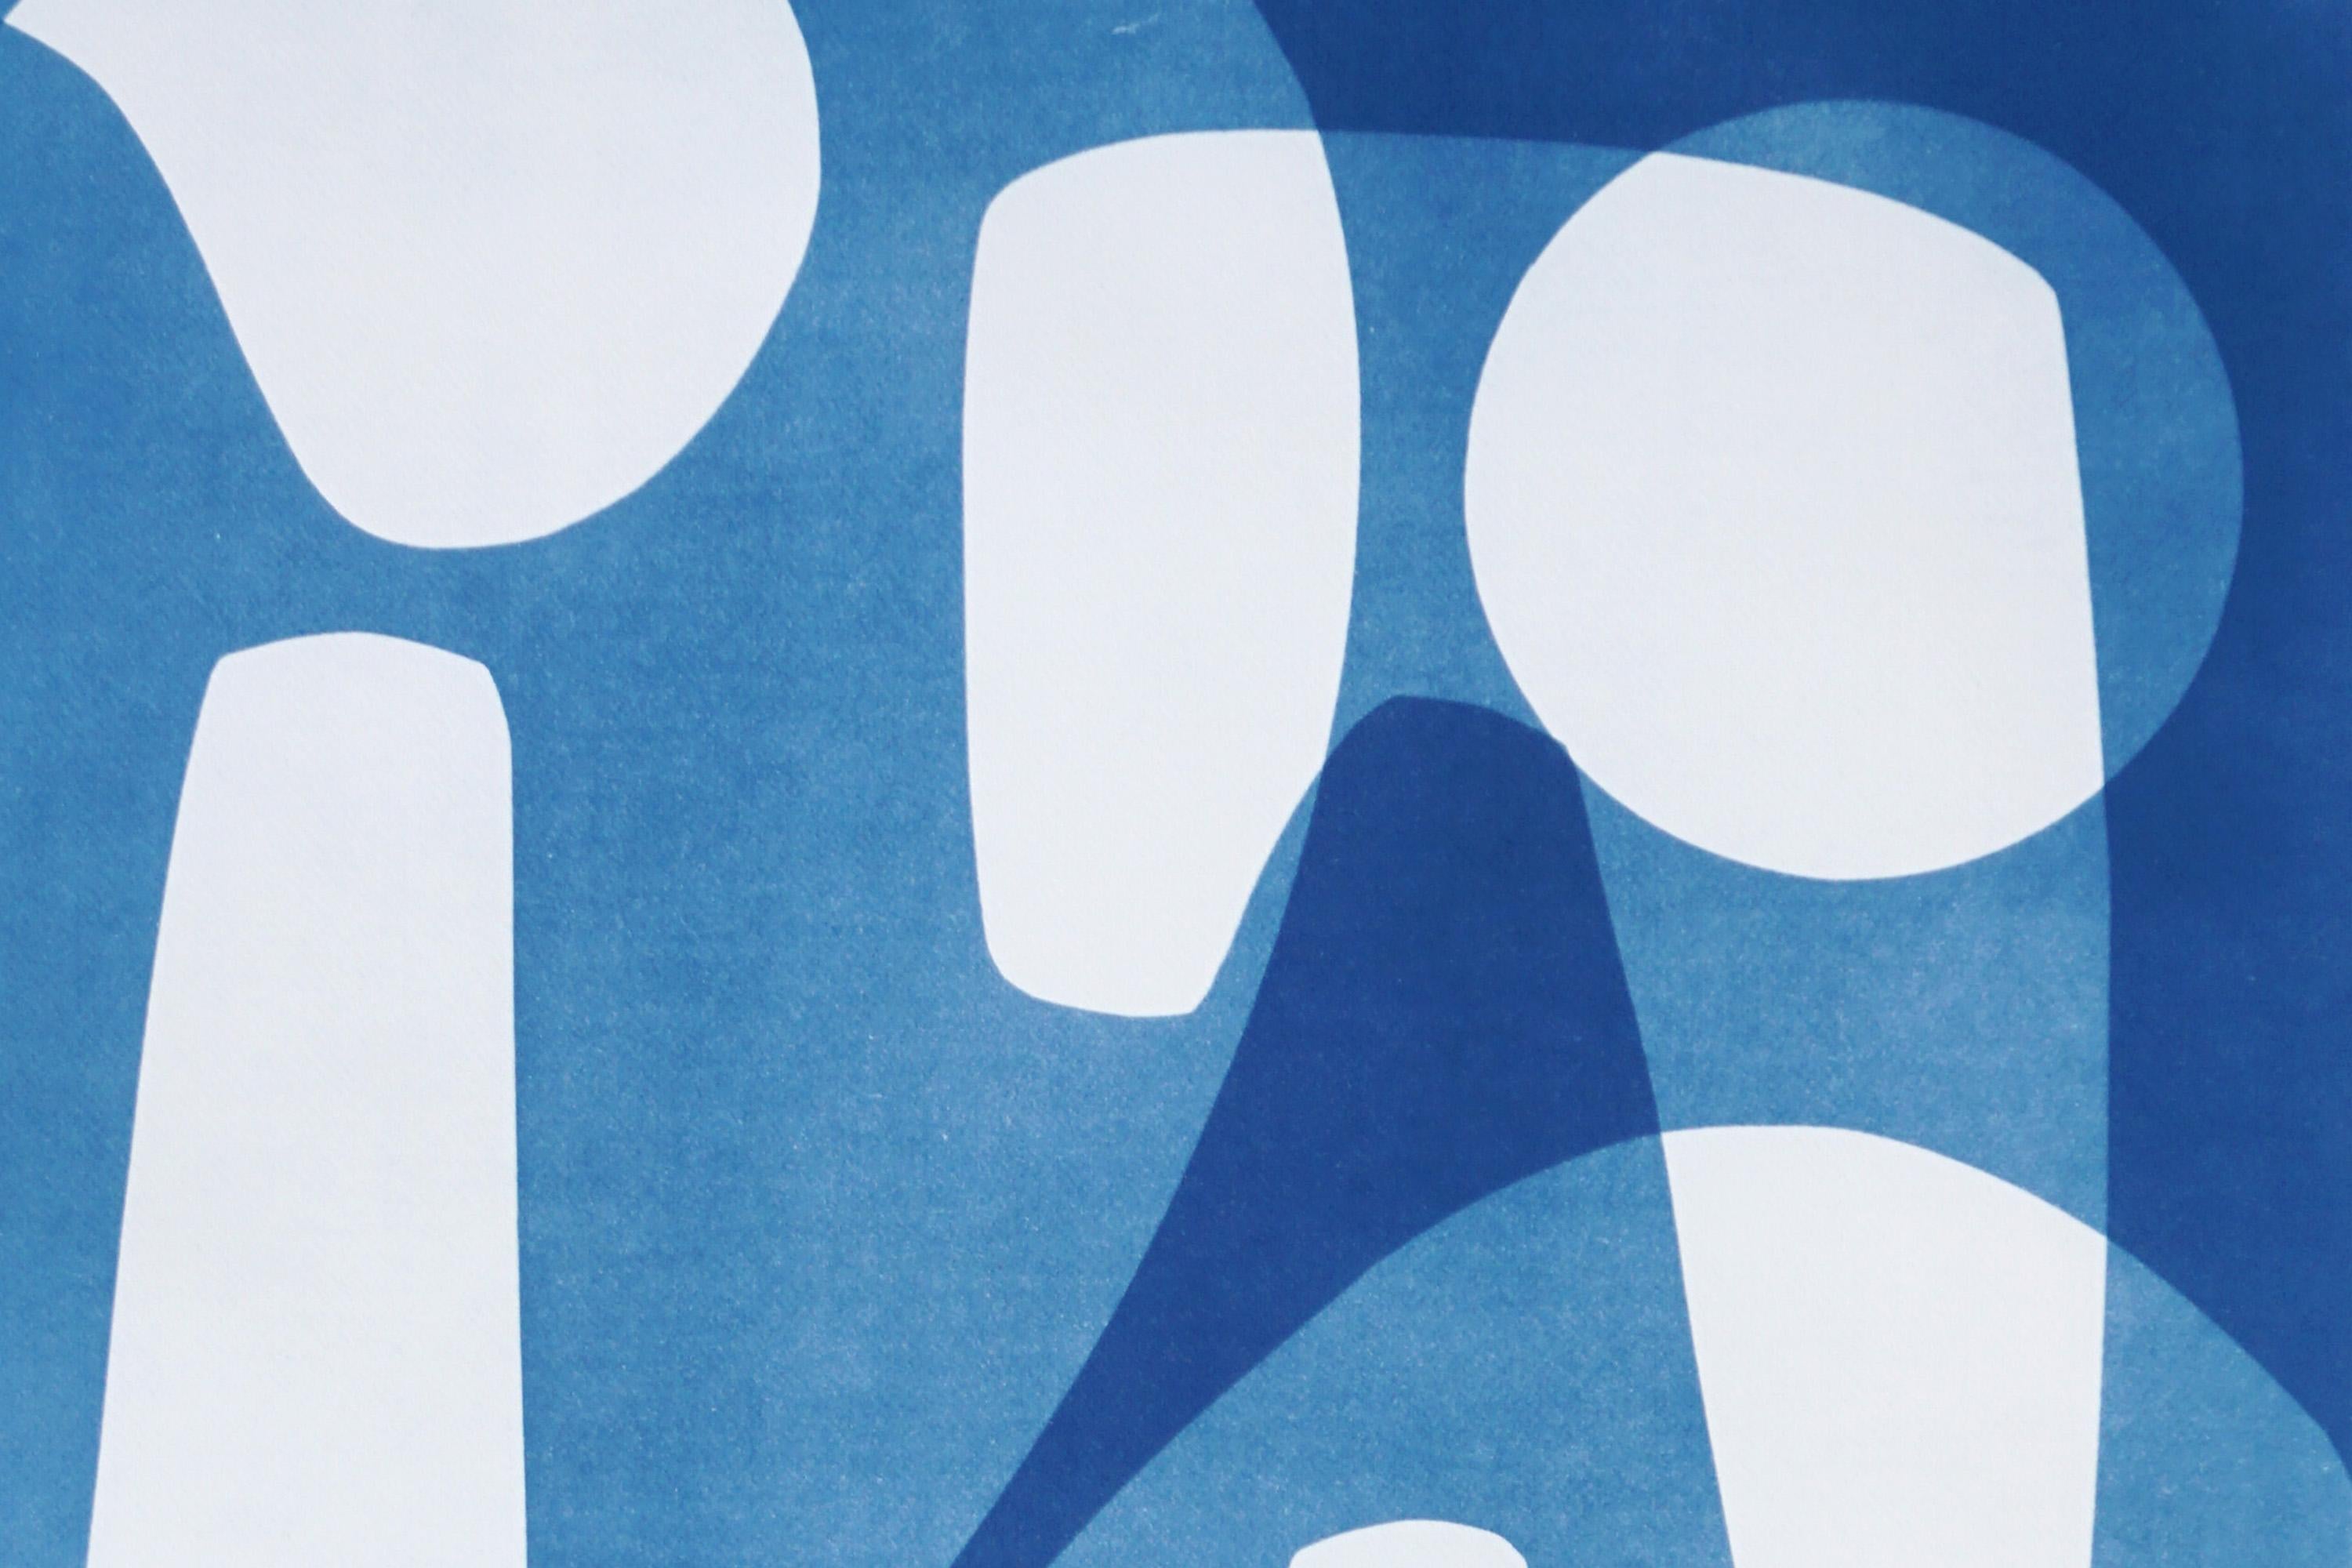 Il s'agit d'un cyanotype unique exclusif, imprimé à la main, qui s'inspire des formes modernes du milieu du siècle dernier.
Il a été réalisé en superposant des papiers découpés et différentes expositions à la lumière UV. 

Détails :
+ Titre : Formes